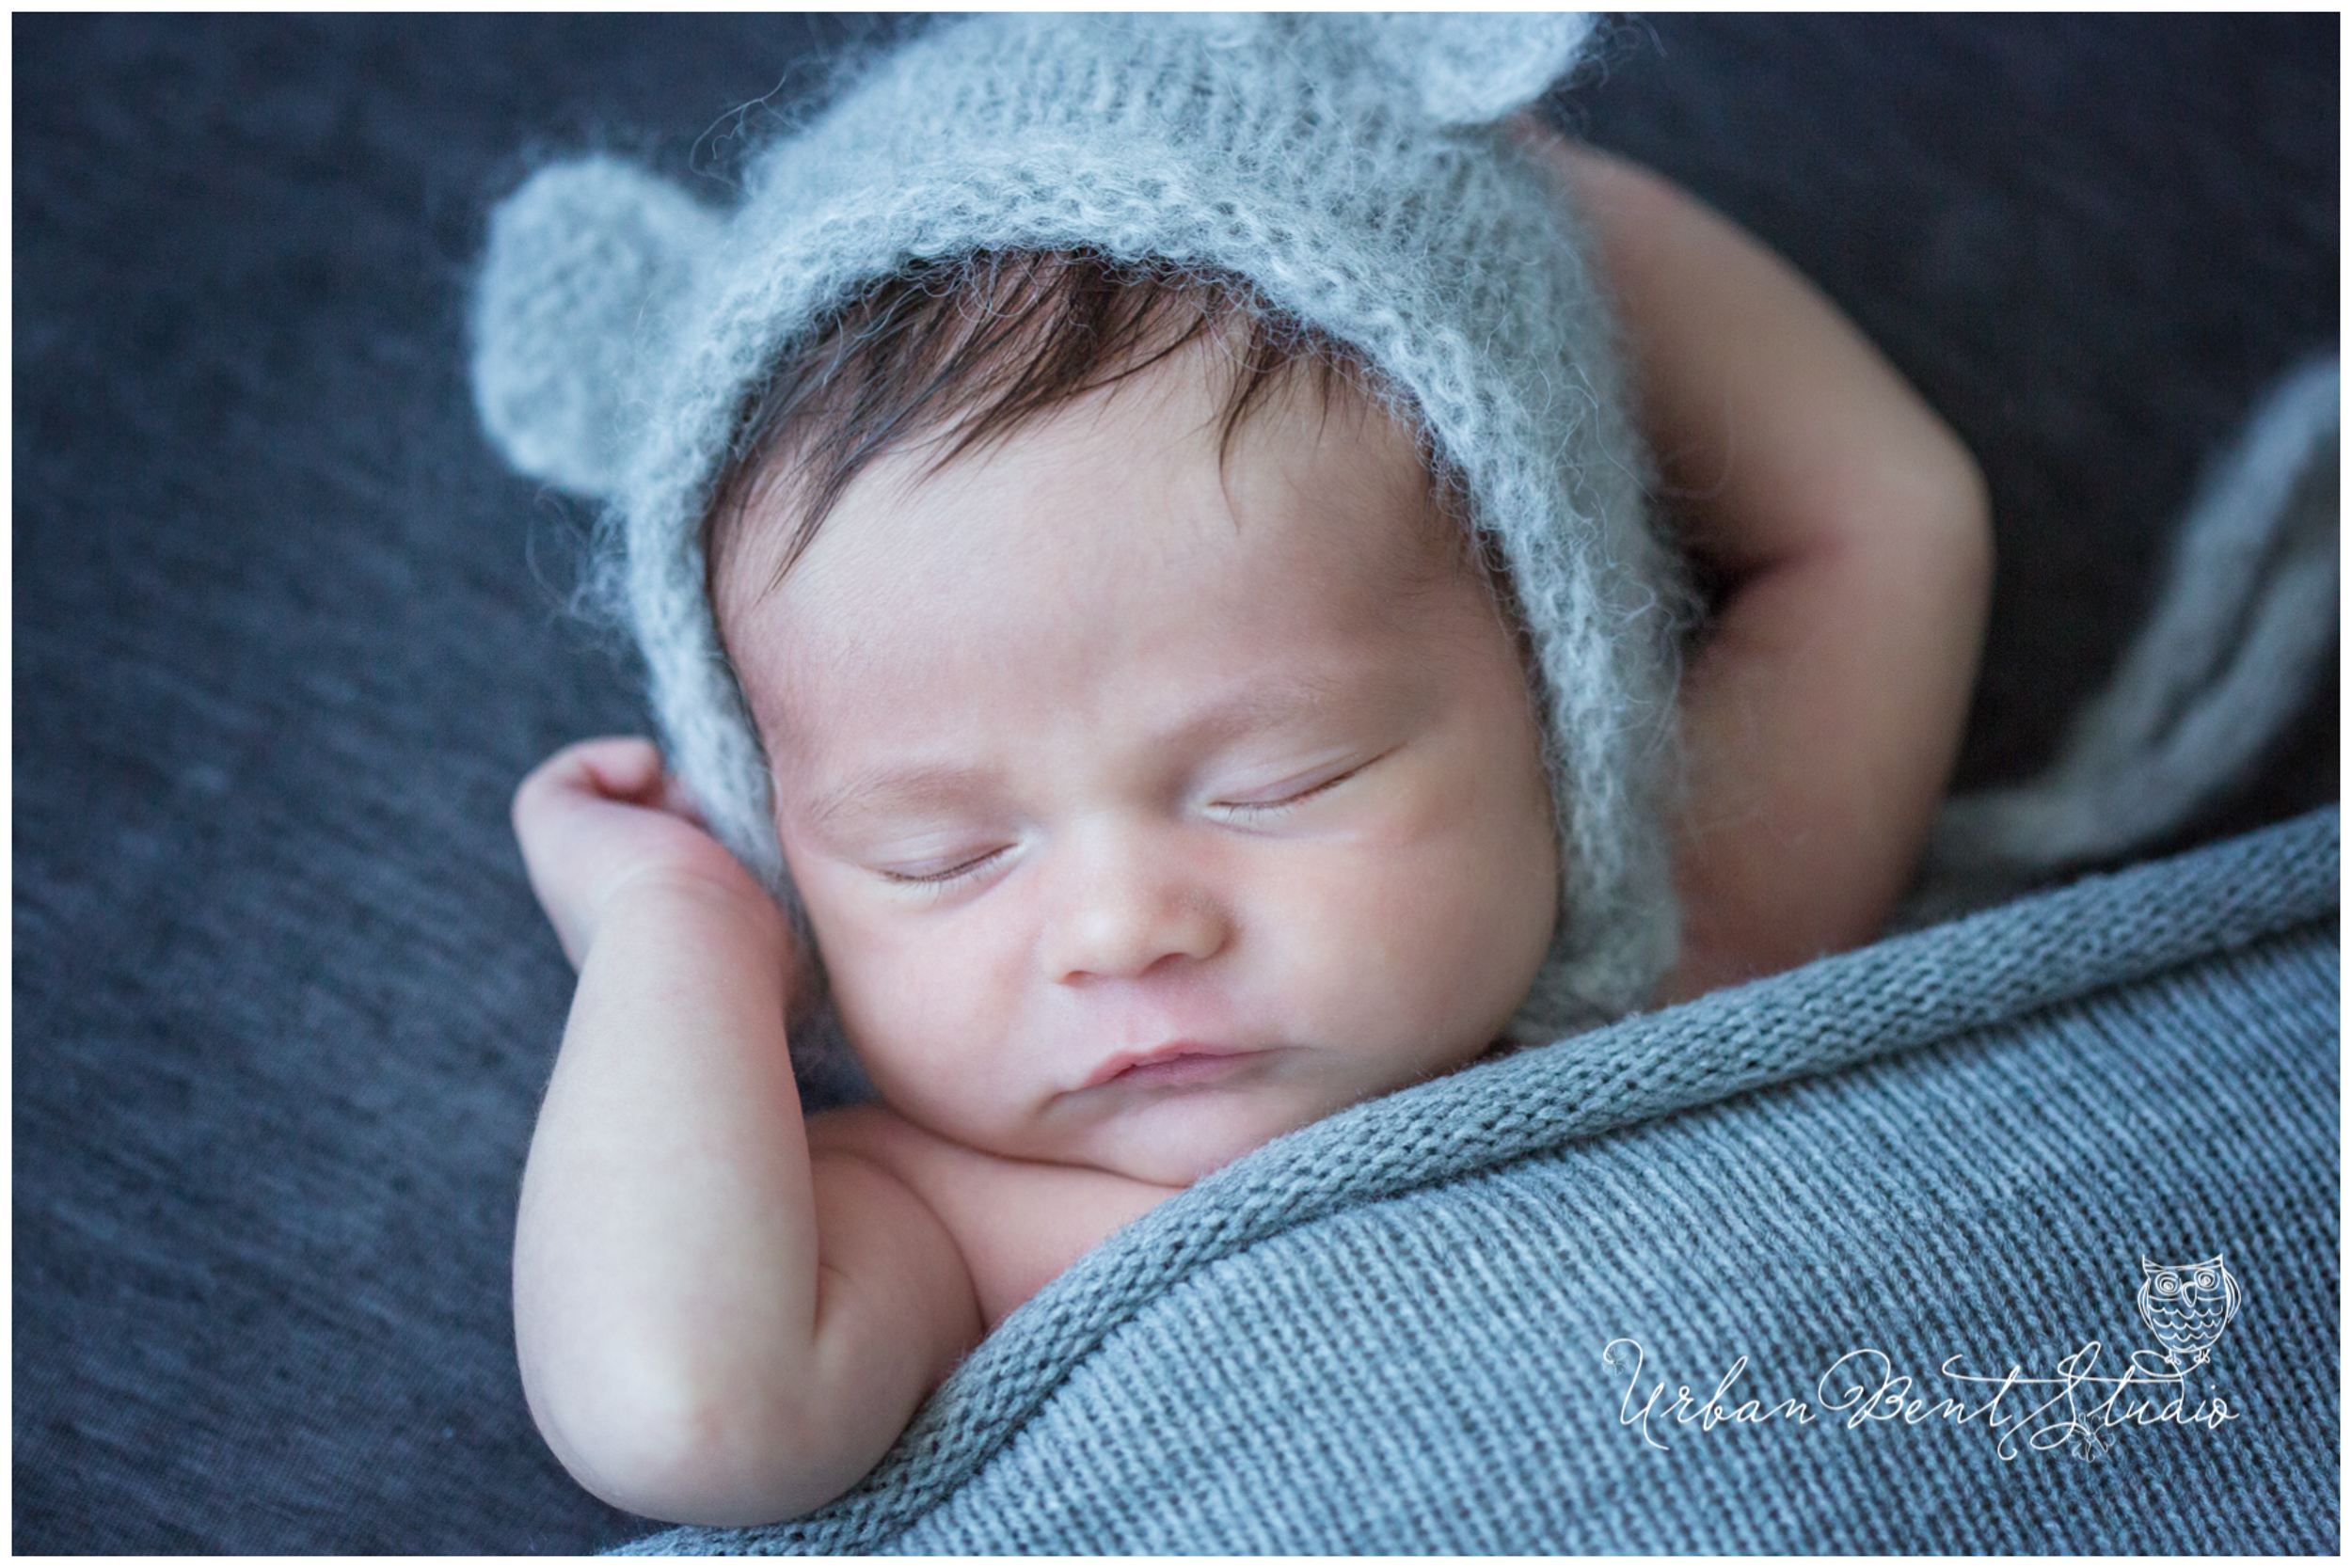 Ottawa newborn photographer, newborn photos Ottawa, baby photography, baby photos, natural light photographer,